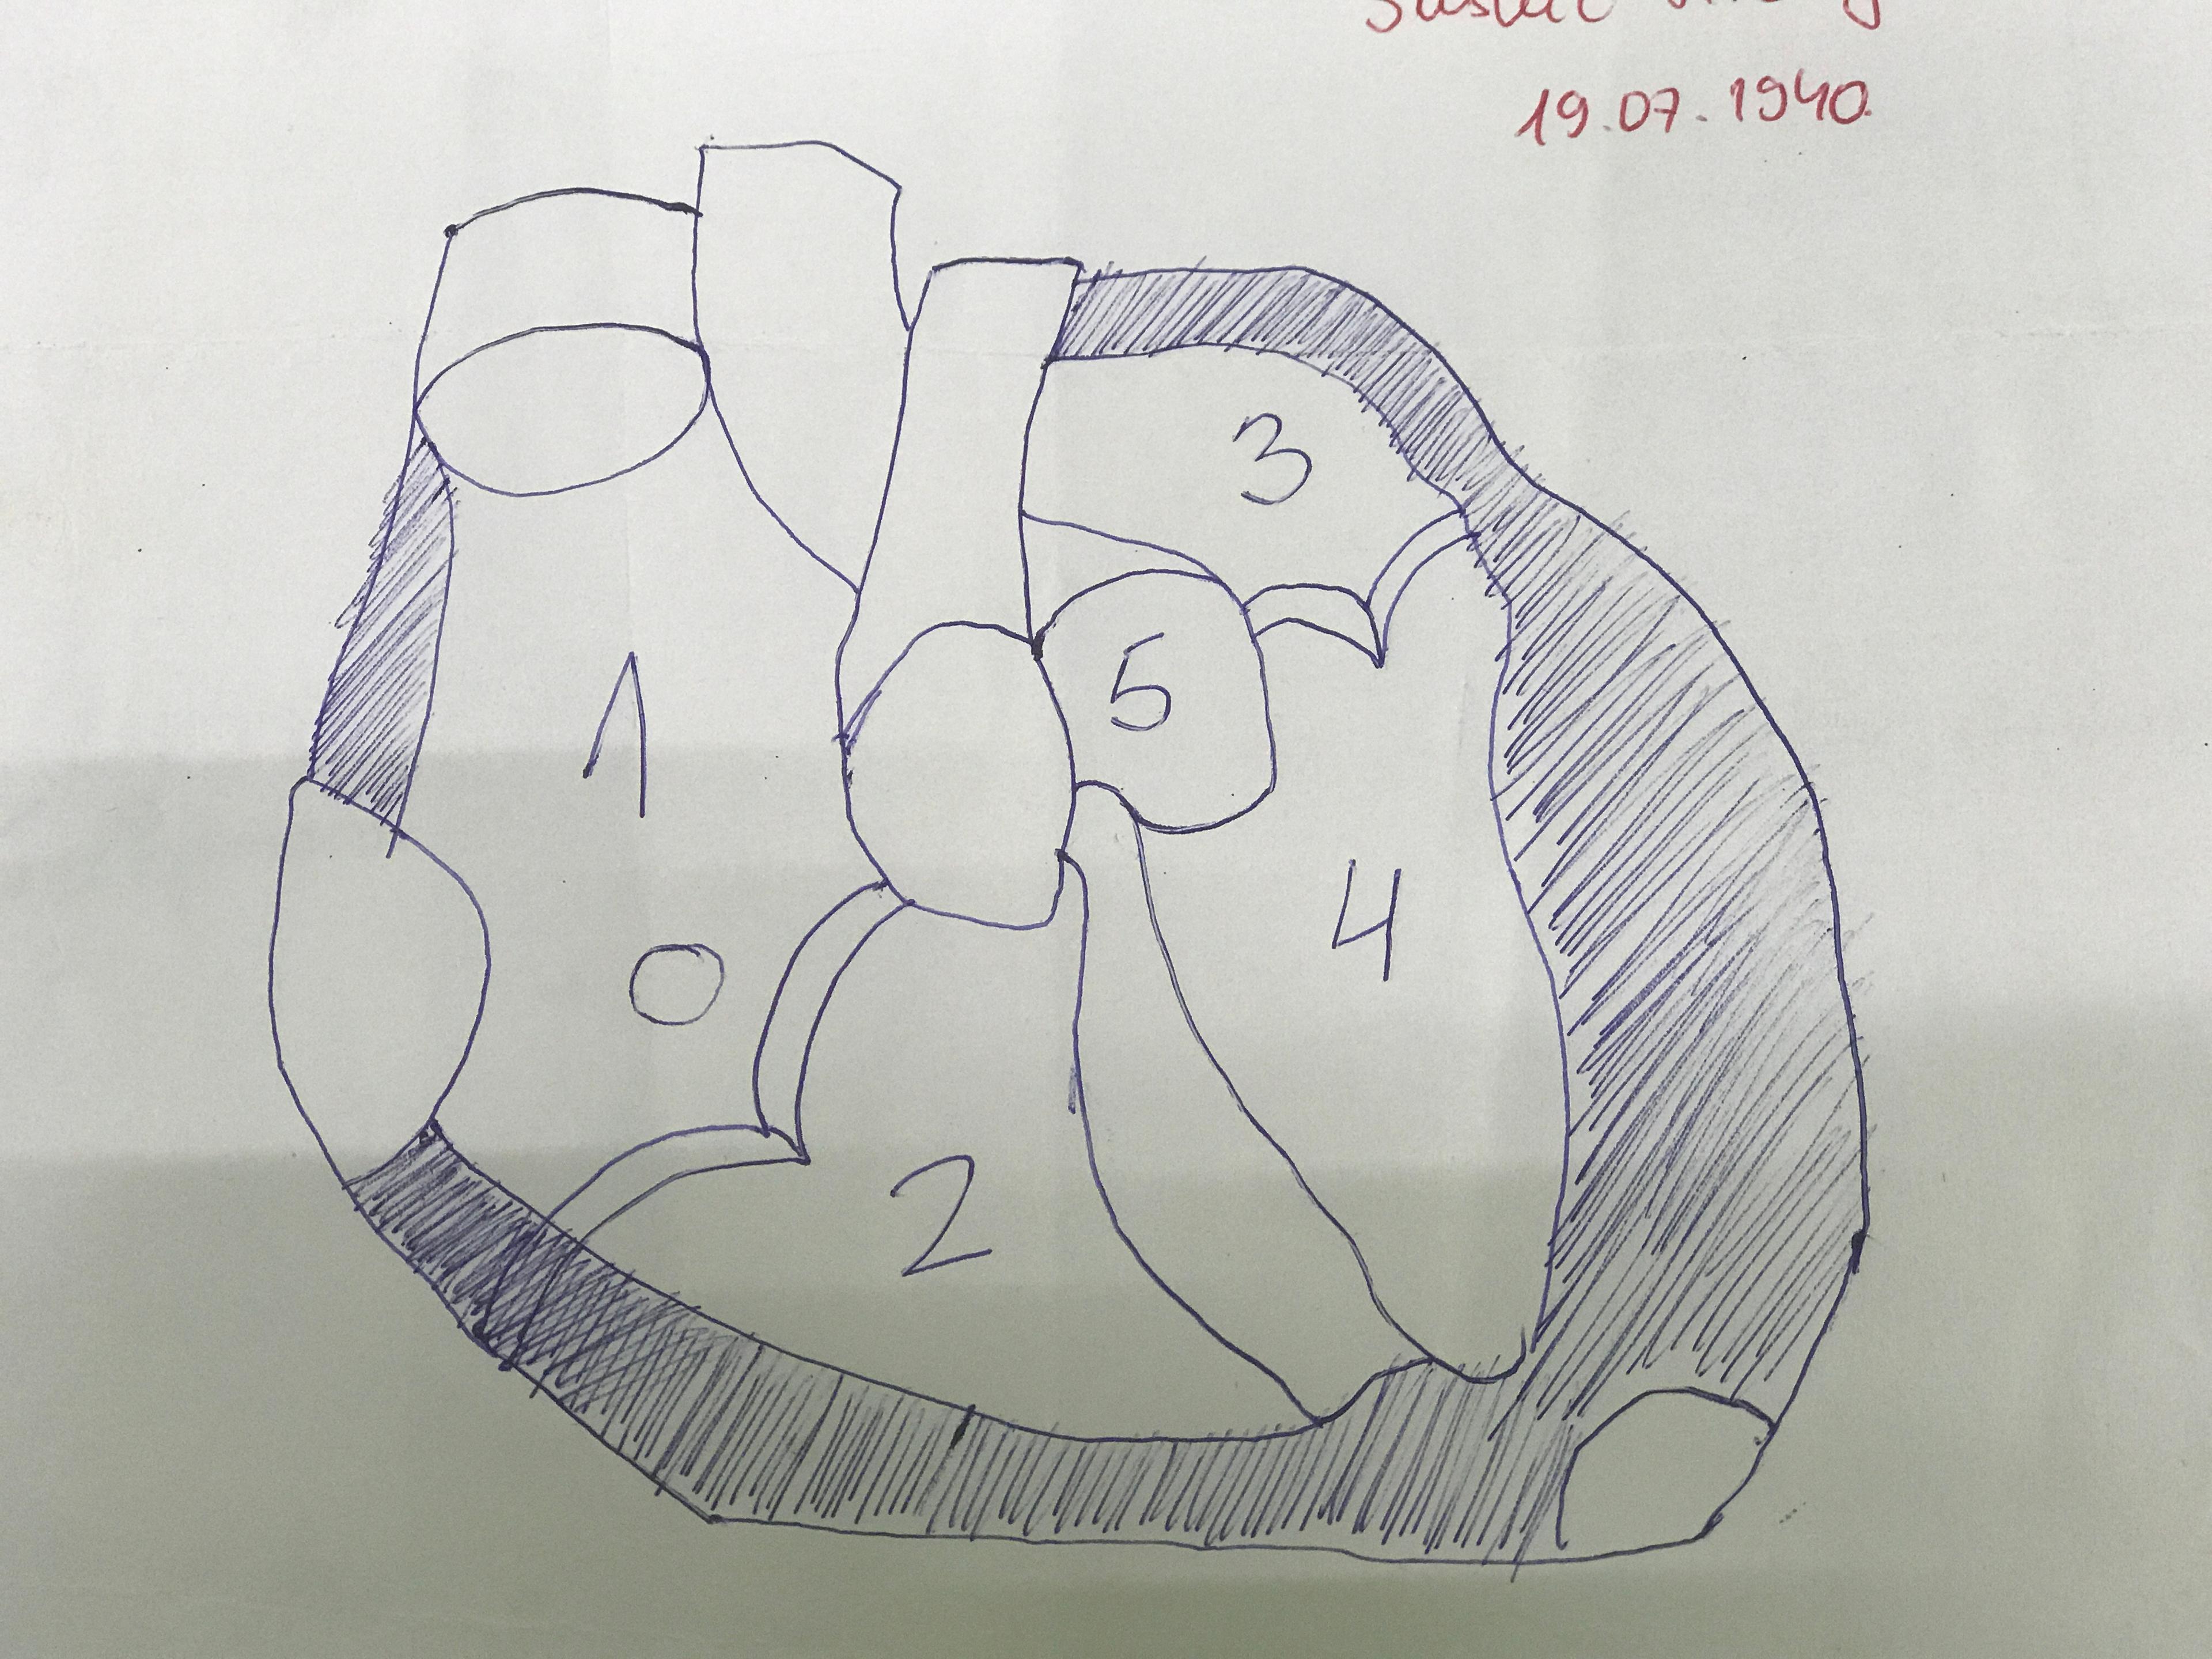 Crtež srca jednog od pacijenata - Avaz